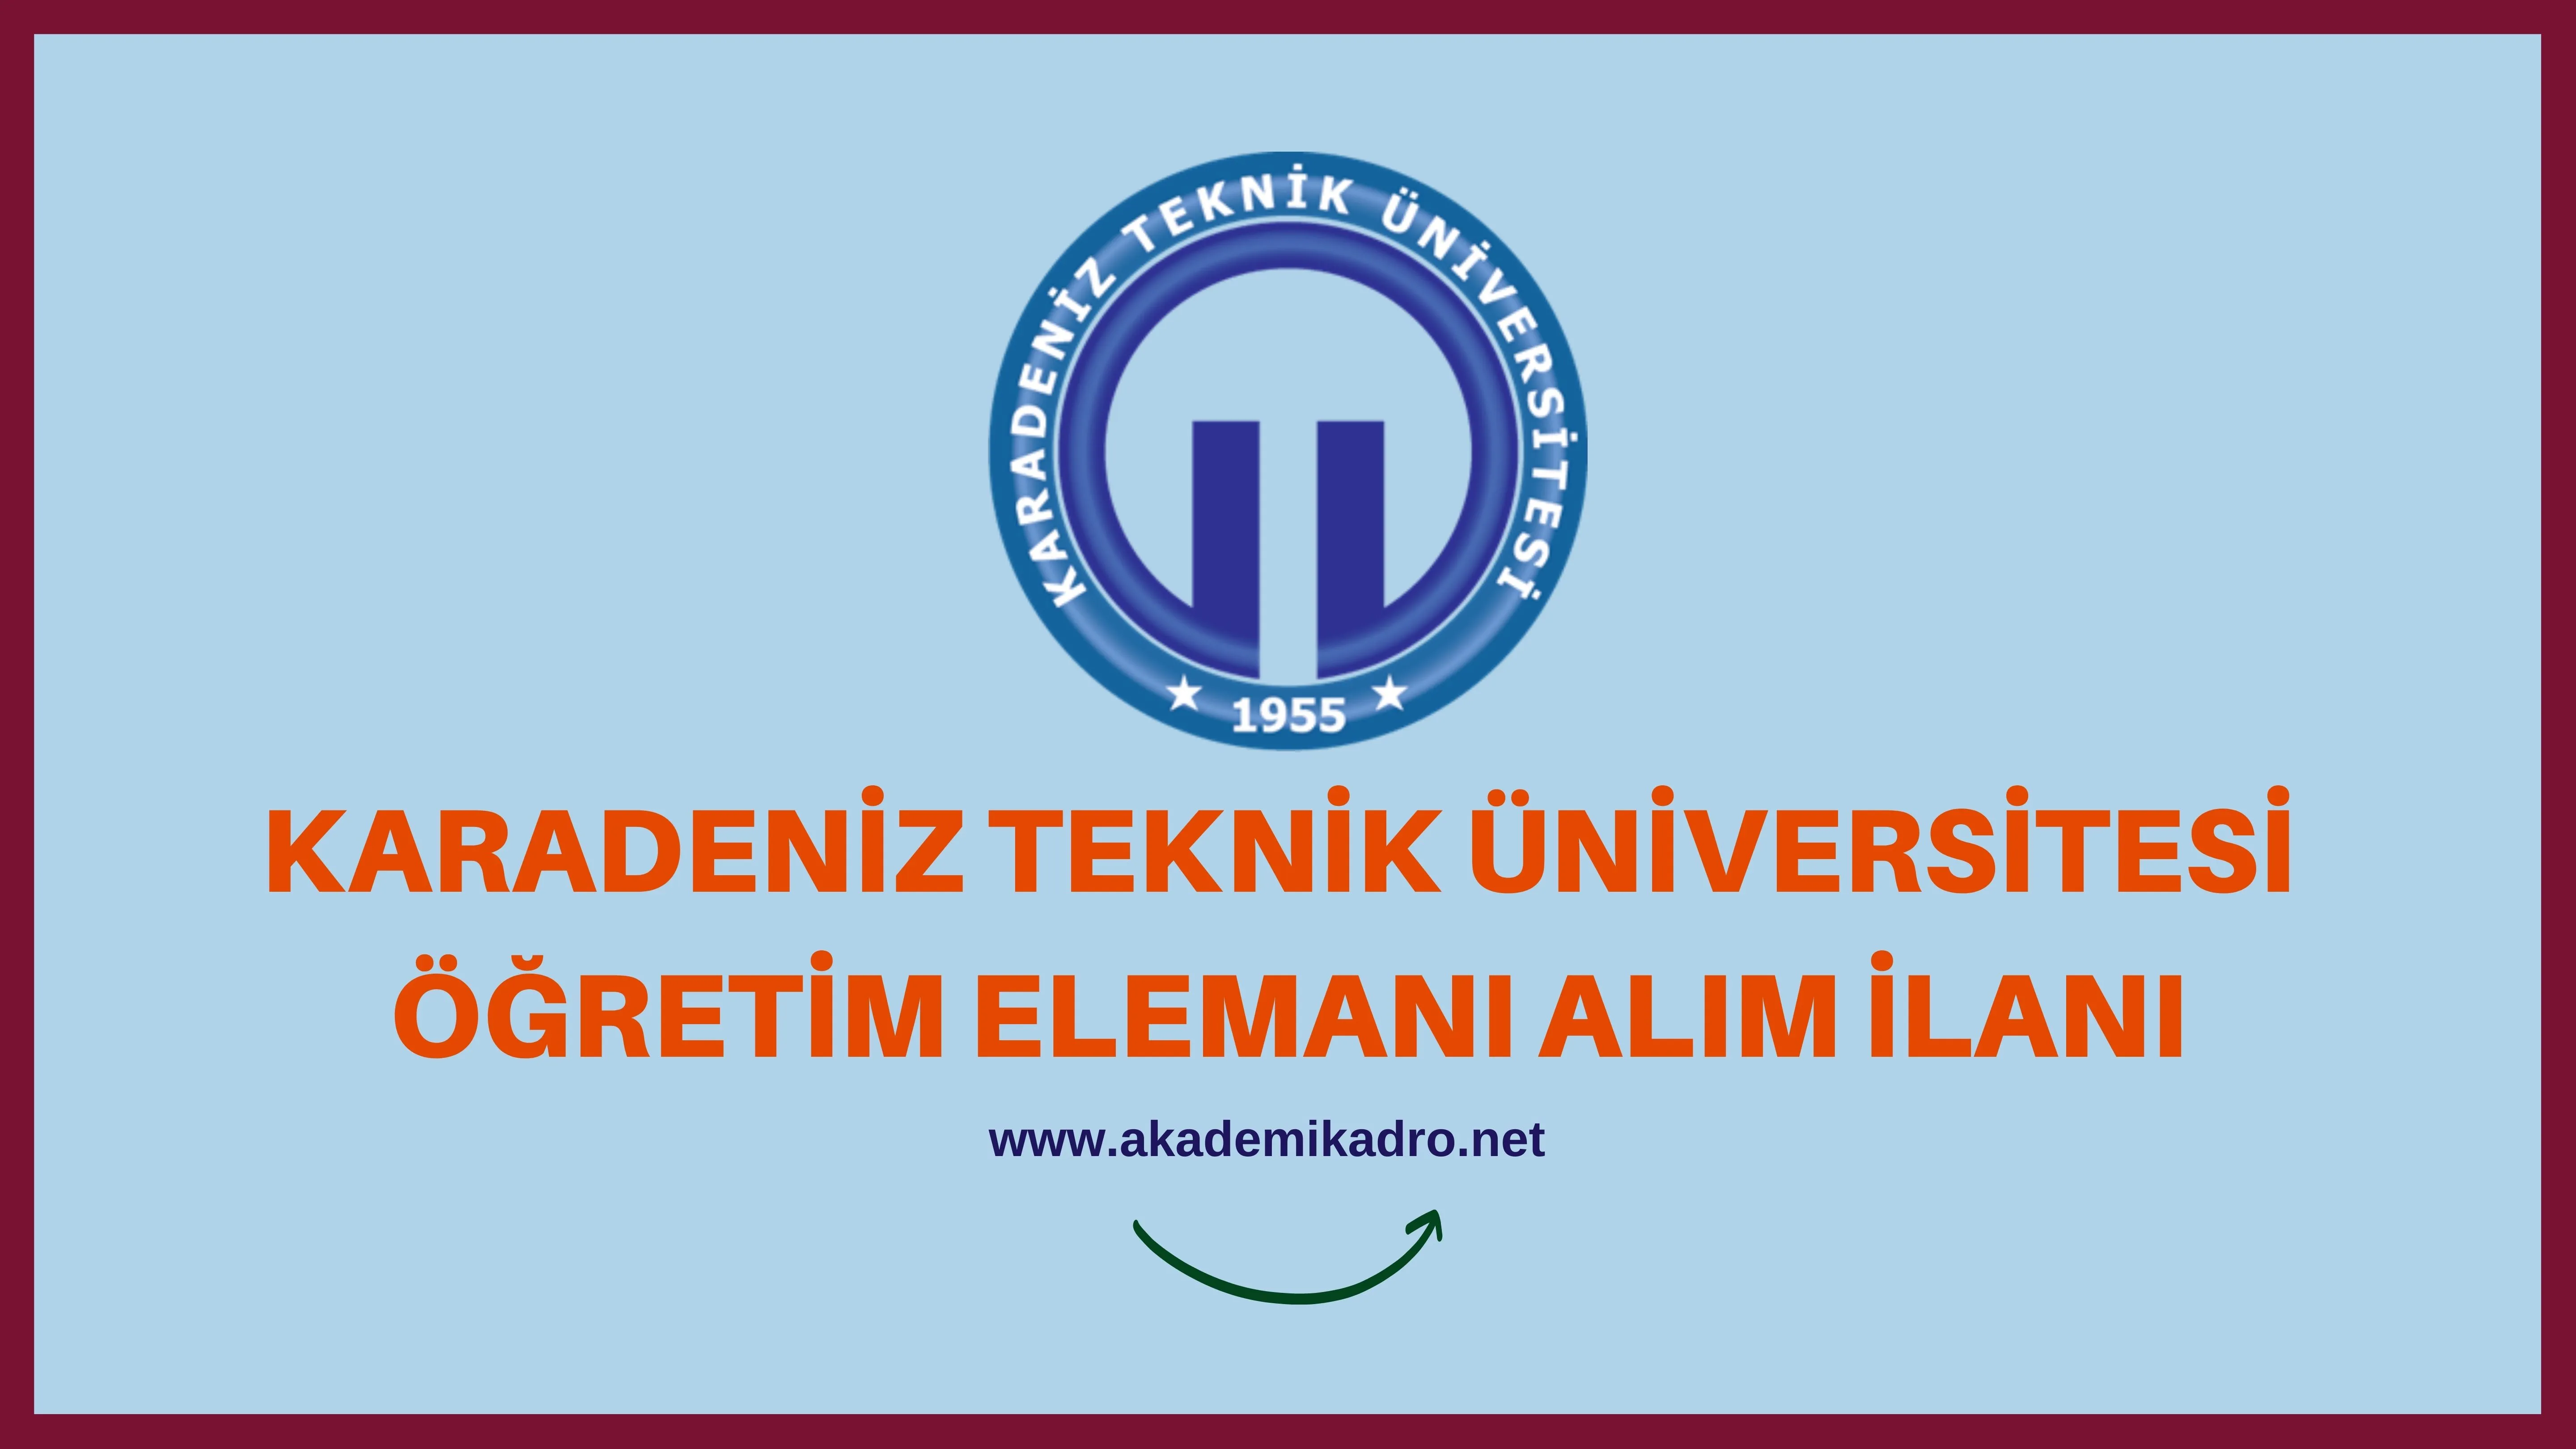 Karadeniz Teknik Üniversitesi 3 Araştırma Görevlisi 18 Öğretim üyesi alacaktır. Son başvuru tarihi 25 Ekim 2022.